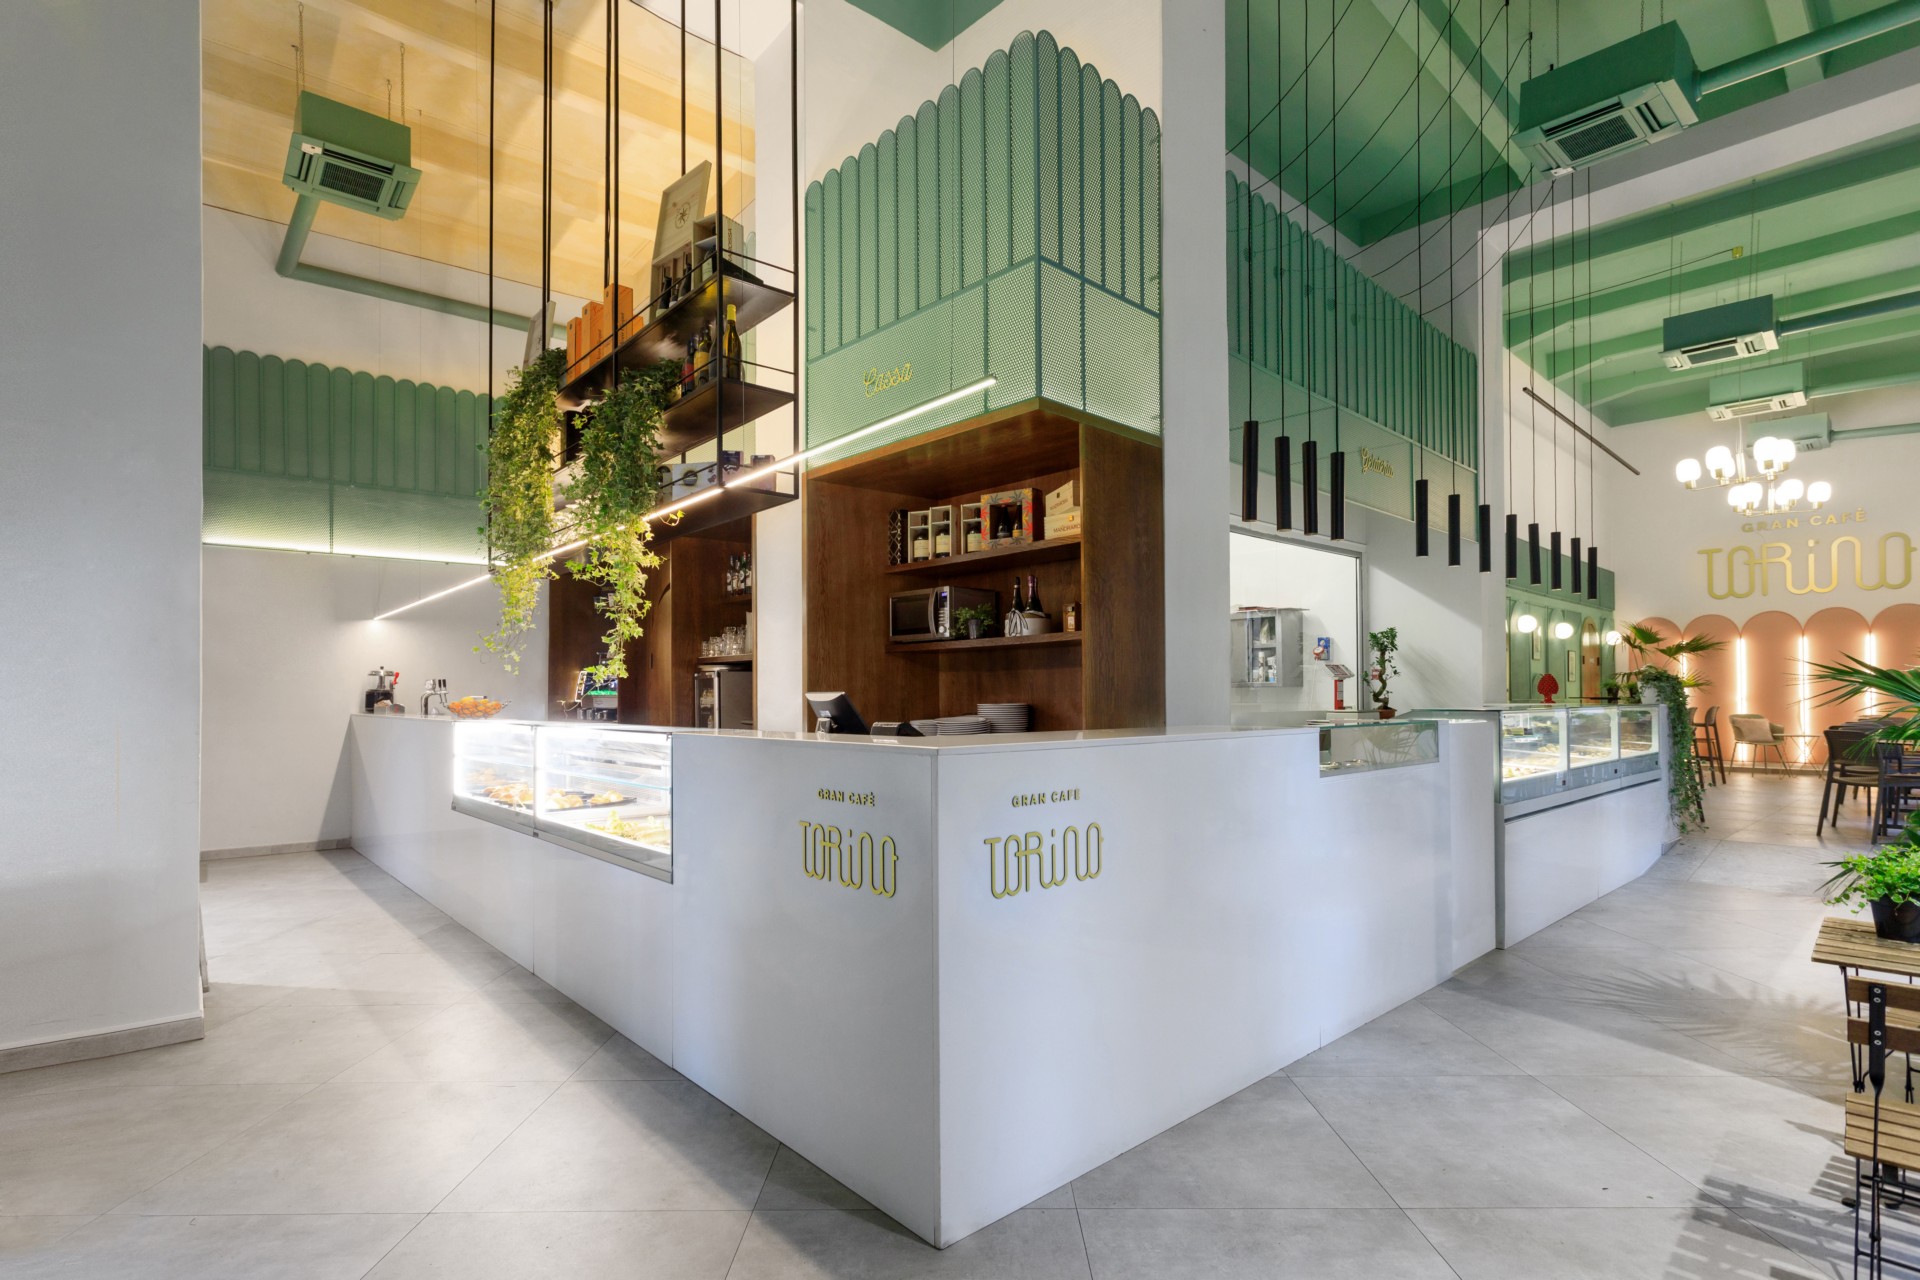 PuccioCollodoro Architetti interior design of Gran Cafè Torino in ...